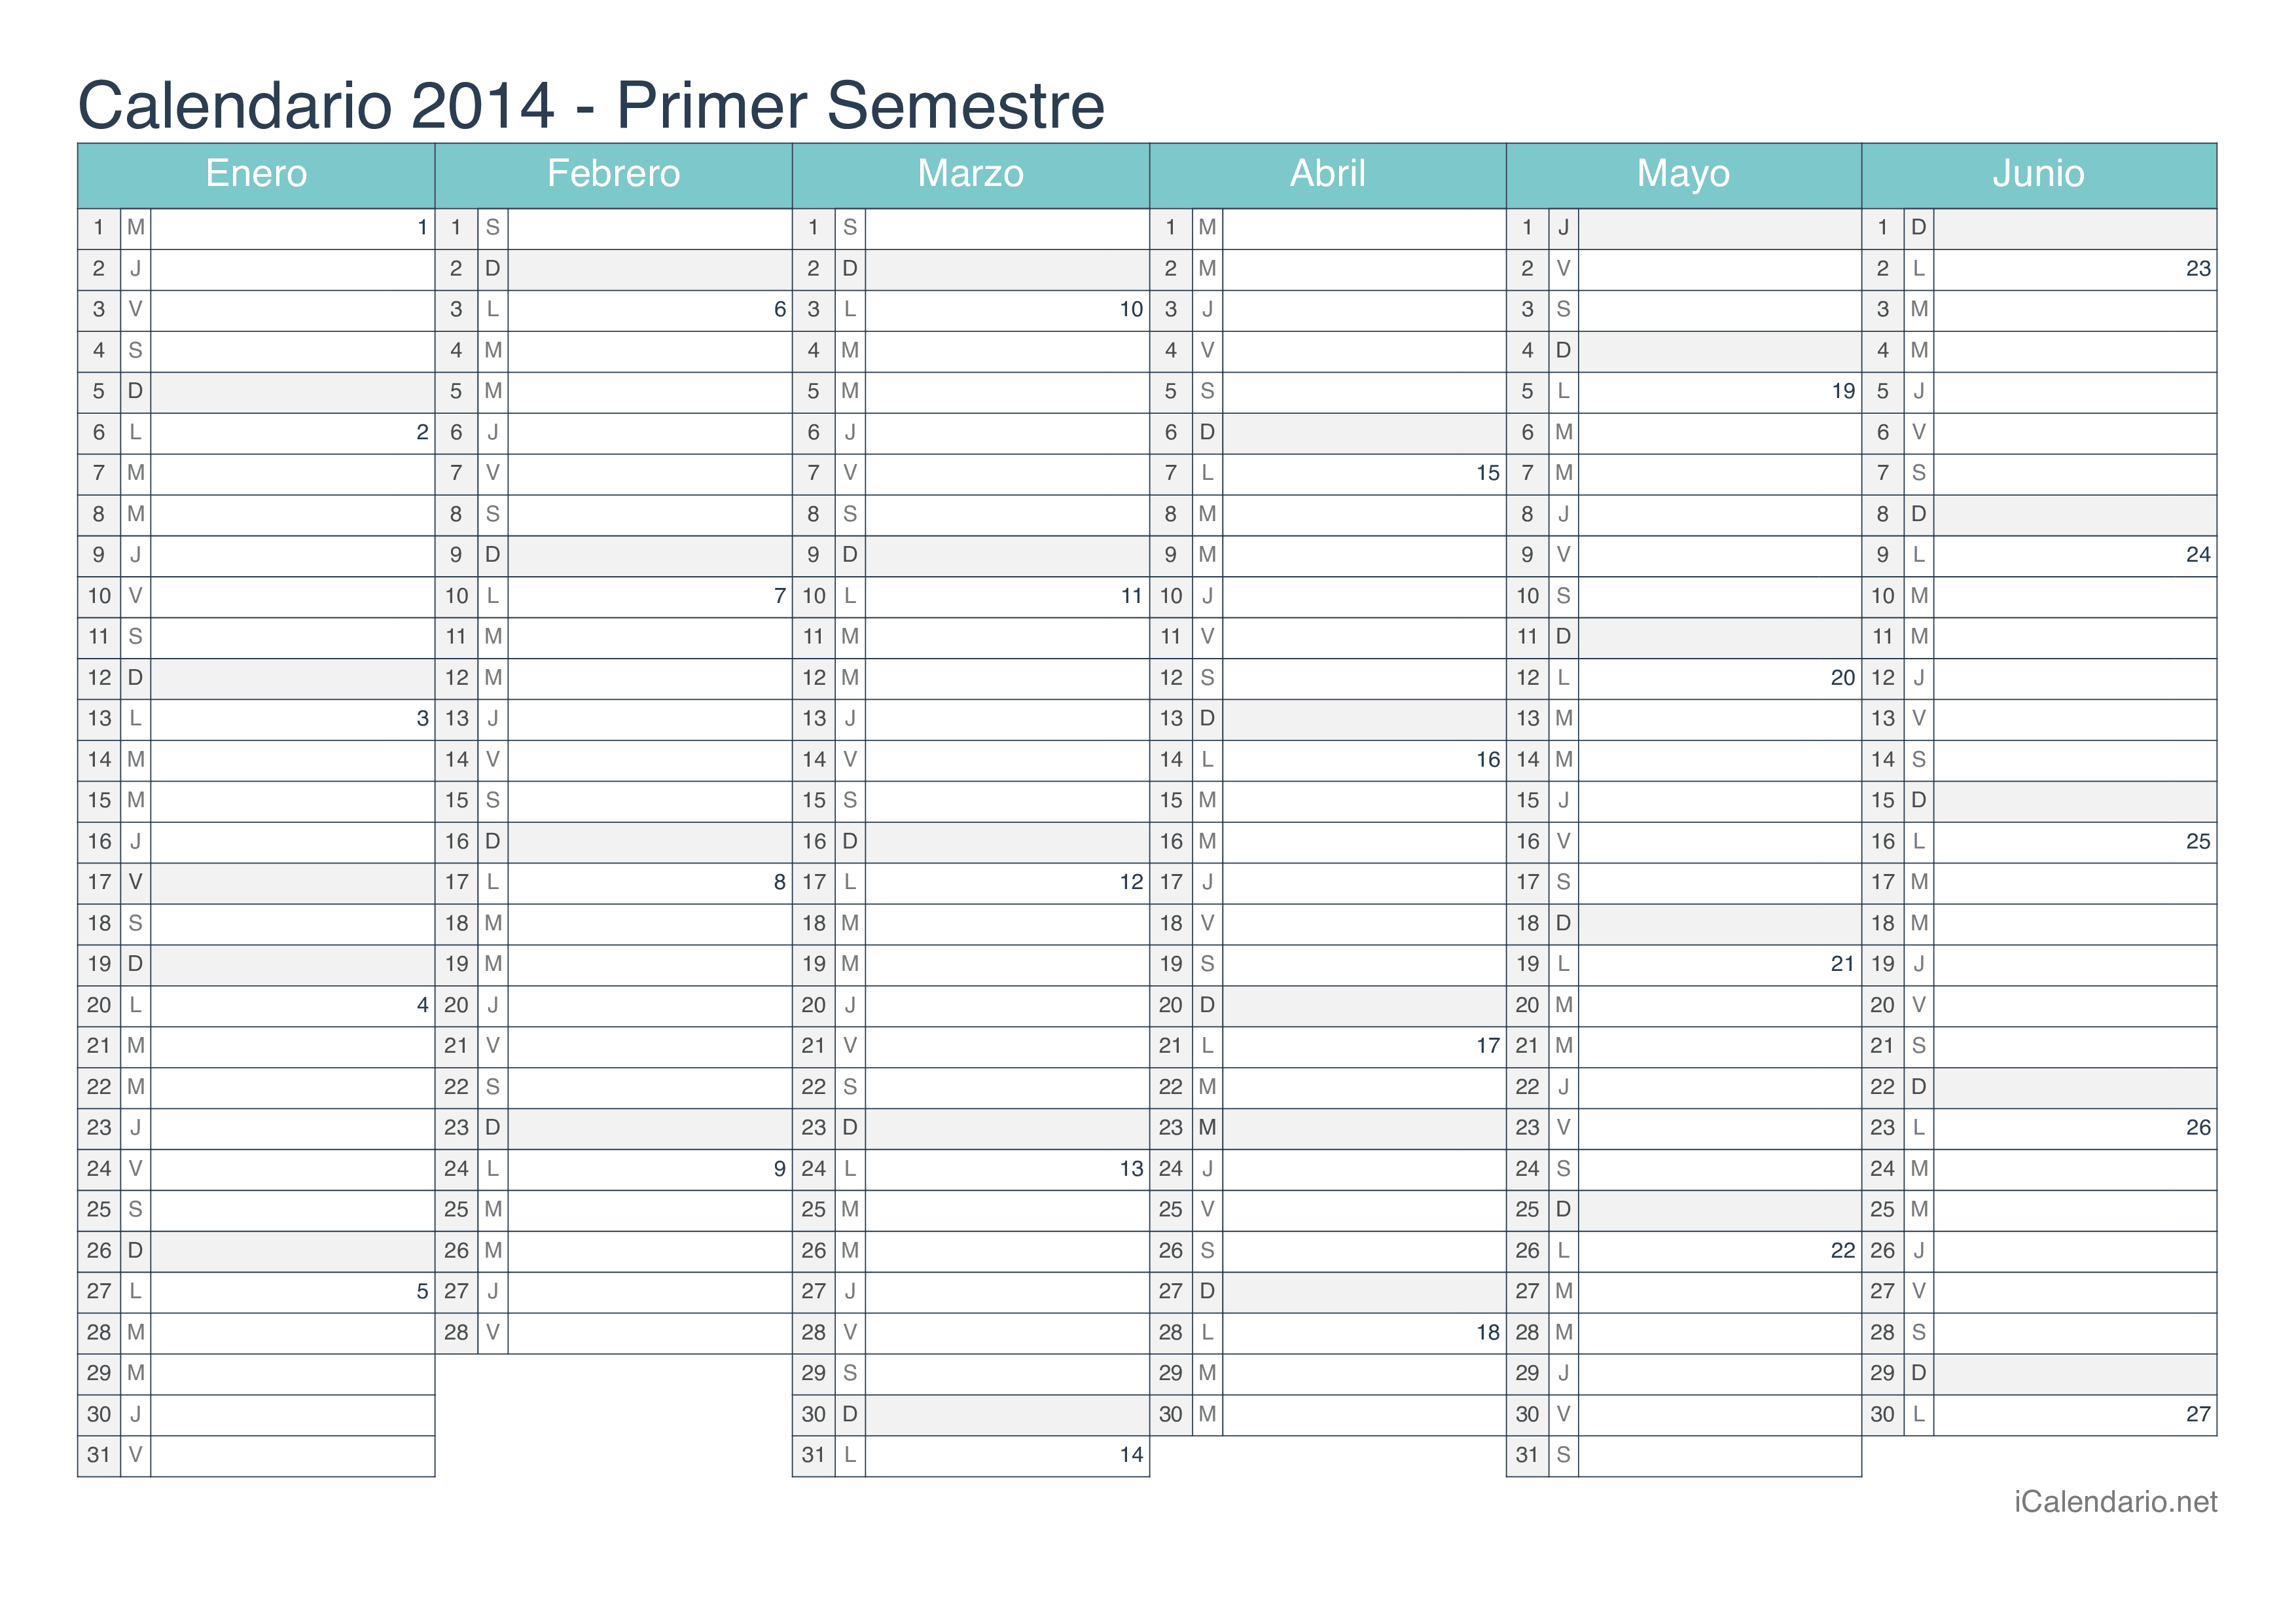 Calendario por semestre com números da semana 2014 - Turquesa